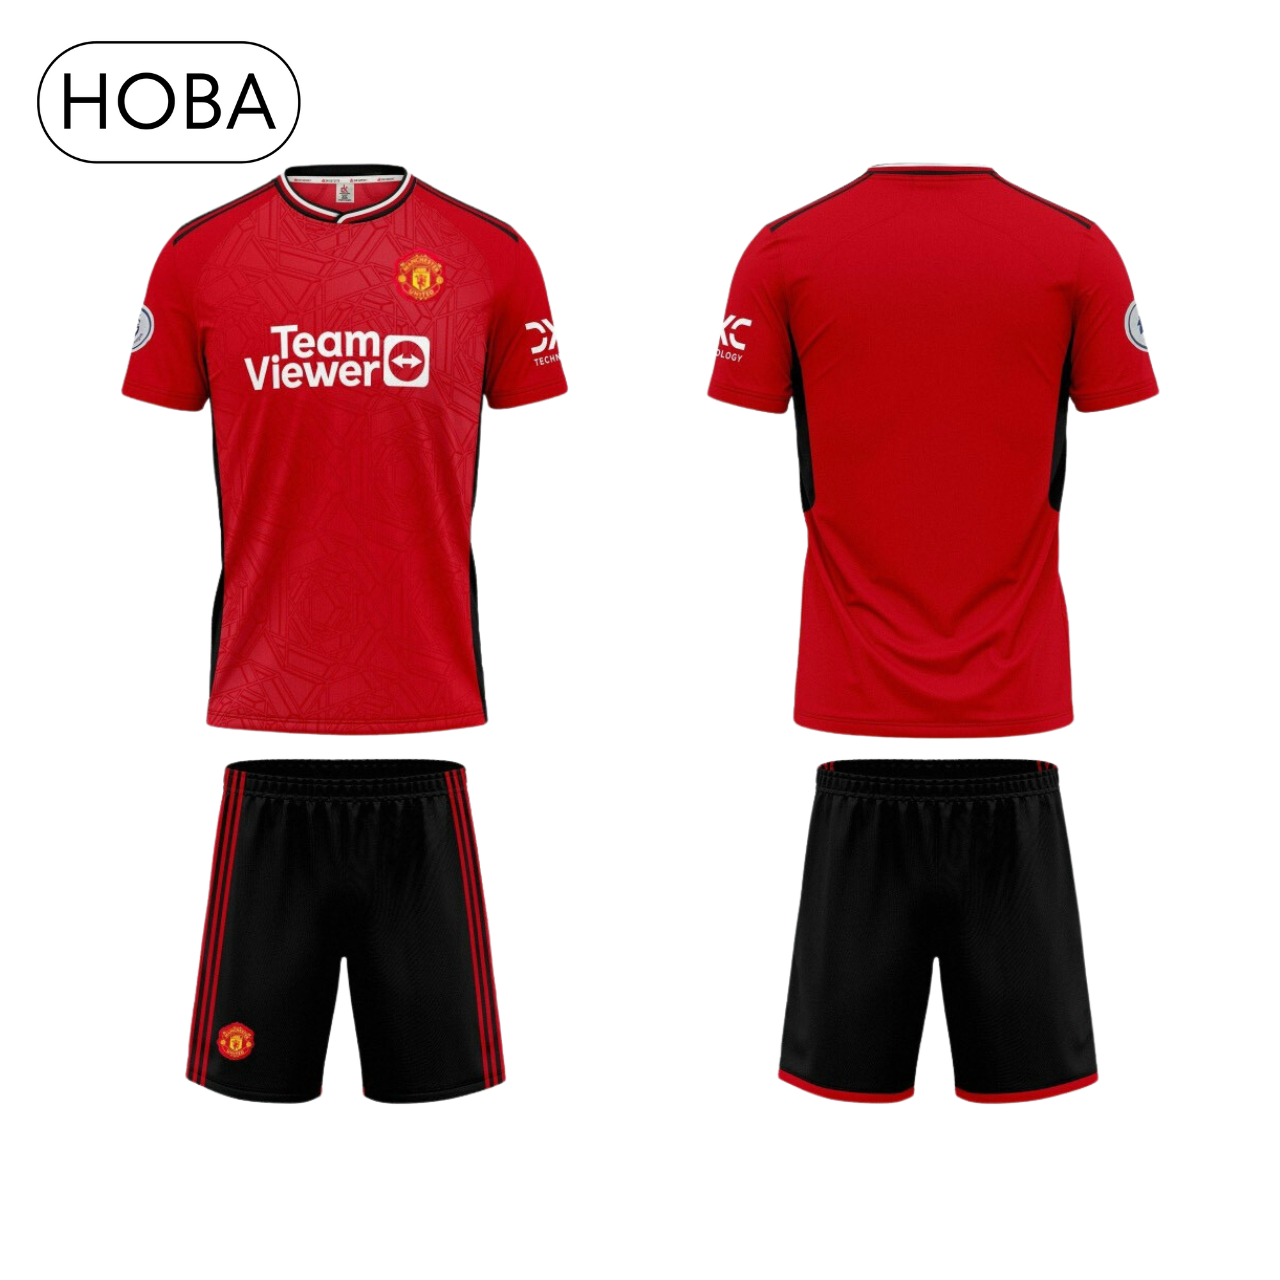 HOÀN TIỀN 15% - Bộ quần áo bóng đá đồ đá banh CLB MU Manchester United đỏ in tên và số theo yêu cầu